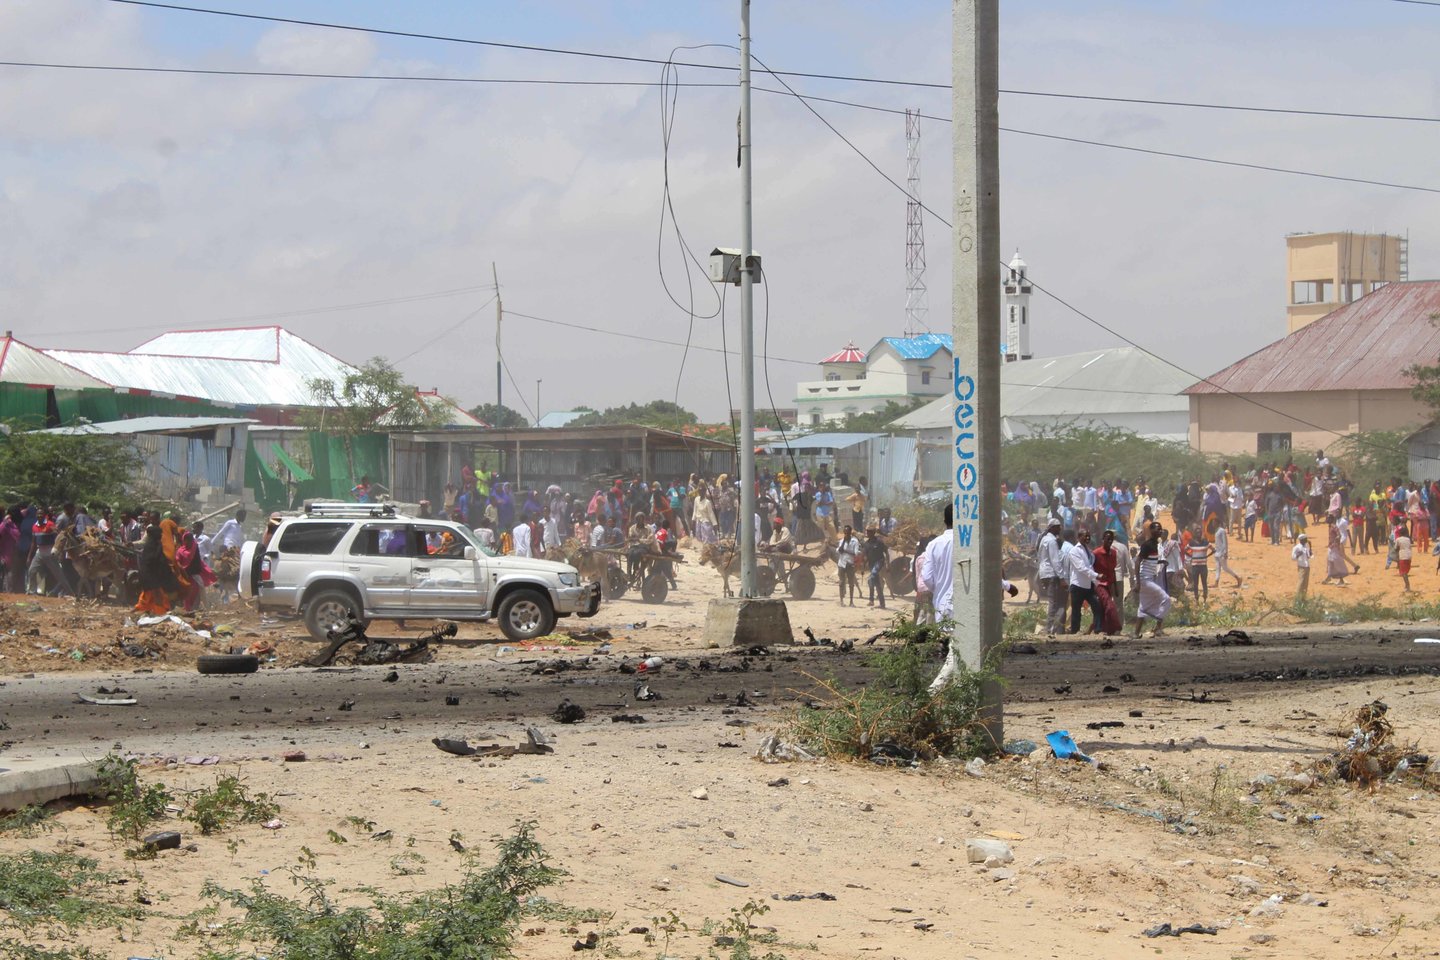  Išpuoliai buvo įvykdyti diena prieš sprogdinimo Mogadiše, kuris yra didžiausia ataka per visą Somalio istoriją, pirmąsias metines.<br> Scanpix nuotr.